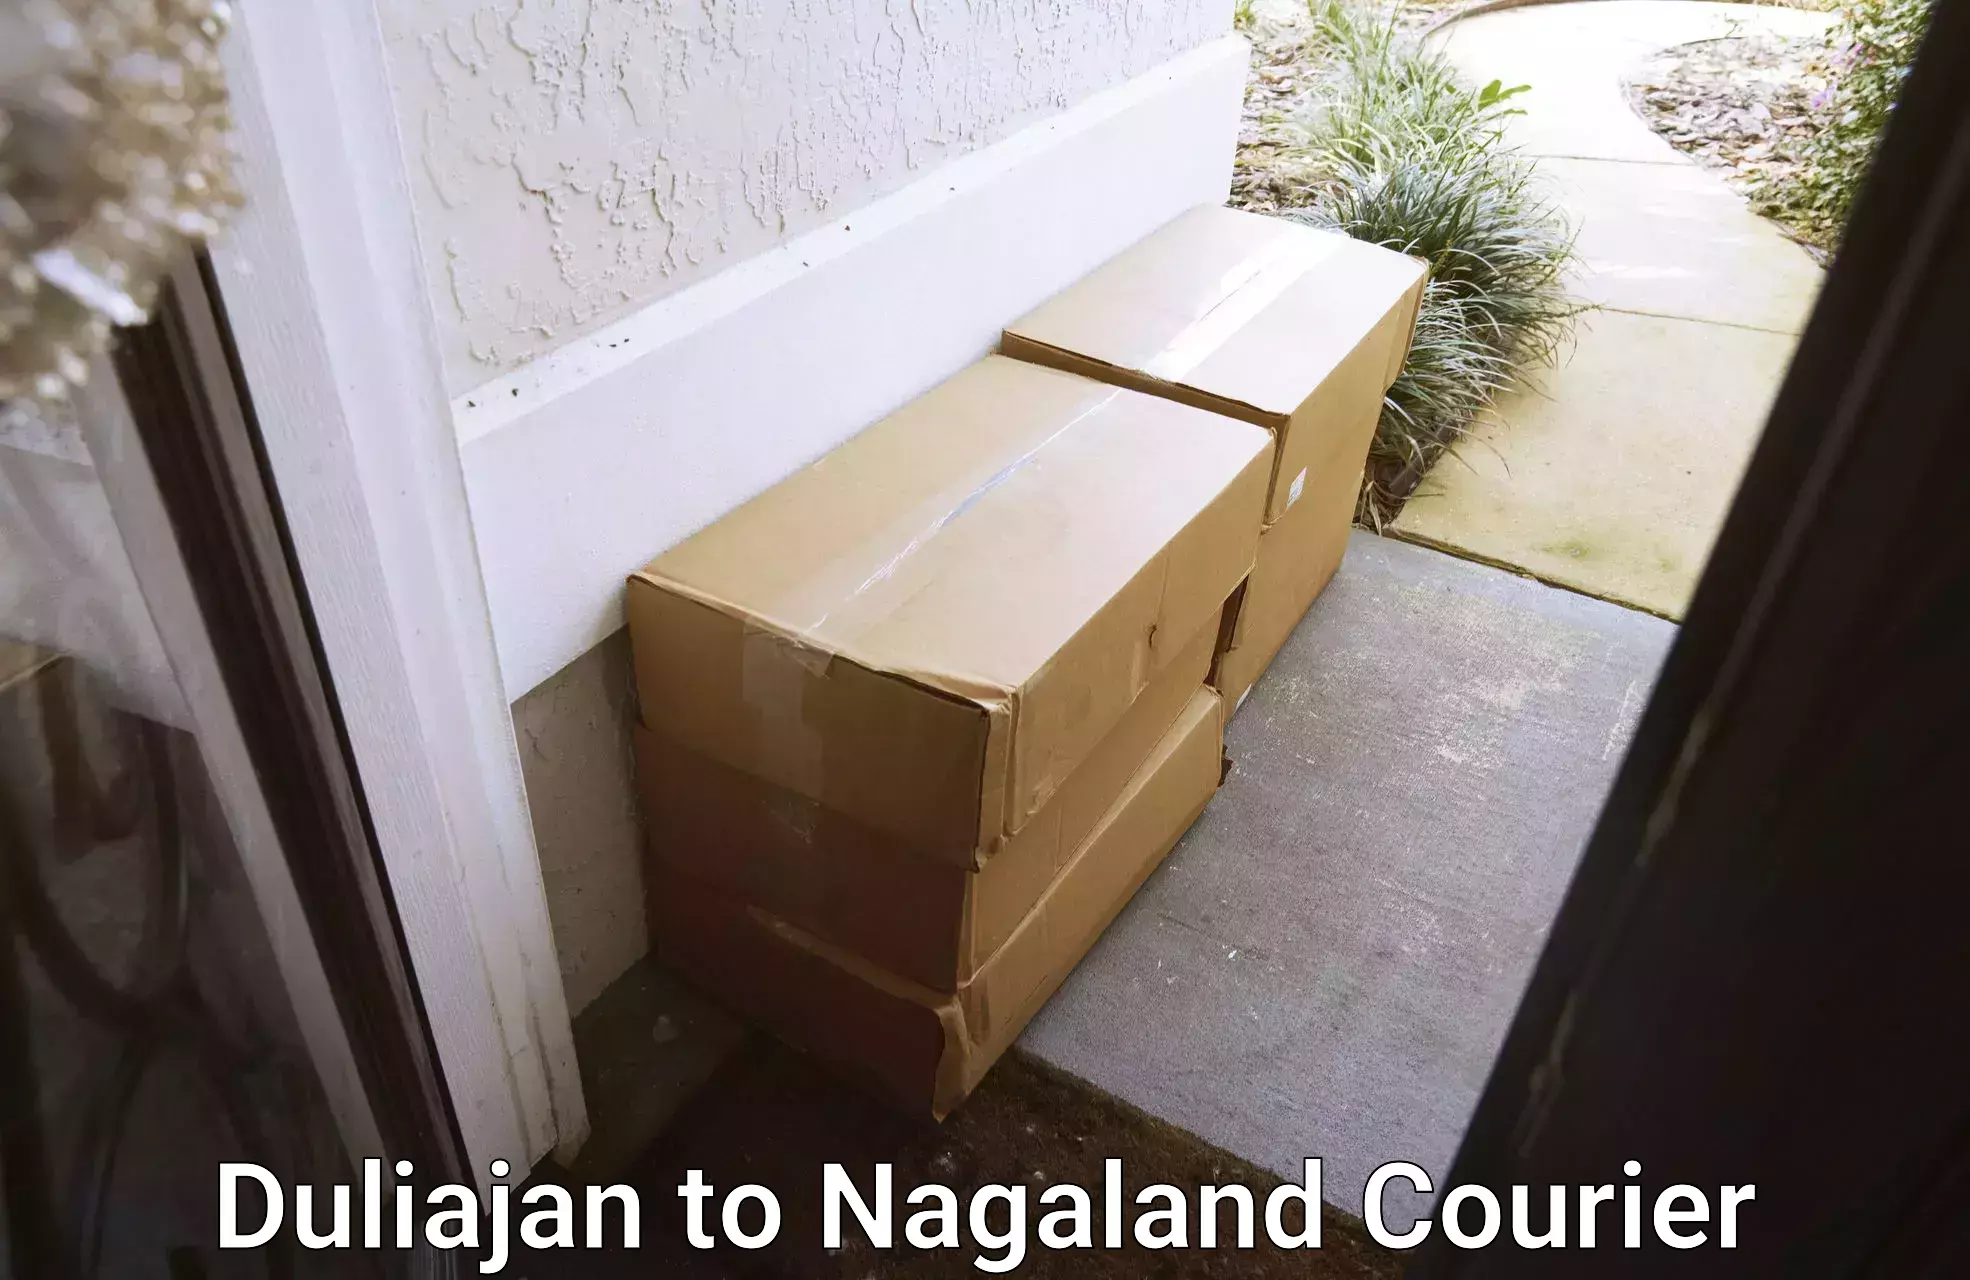 Efficient parcel service Duliajan to Dimapur